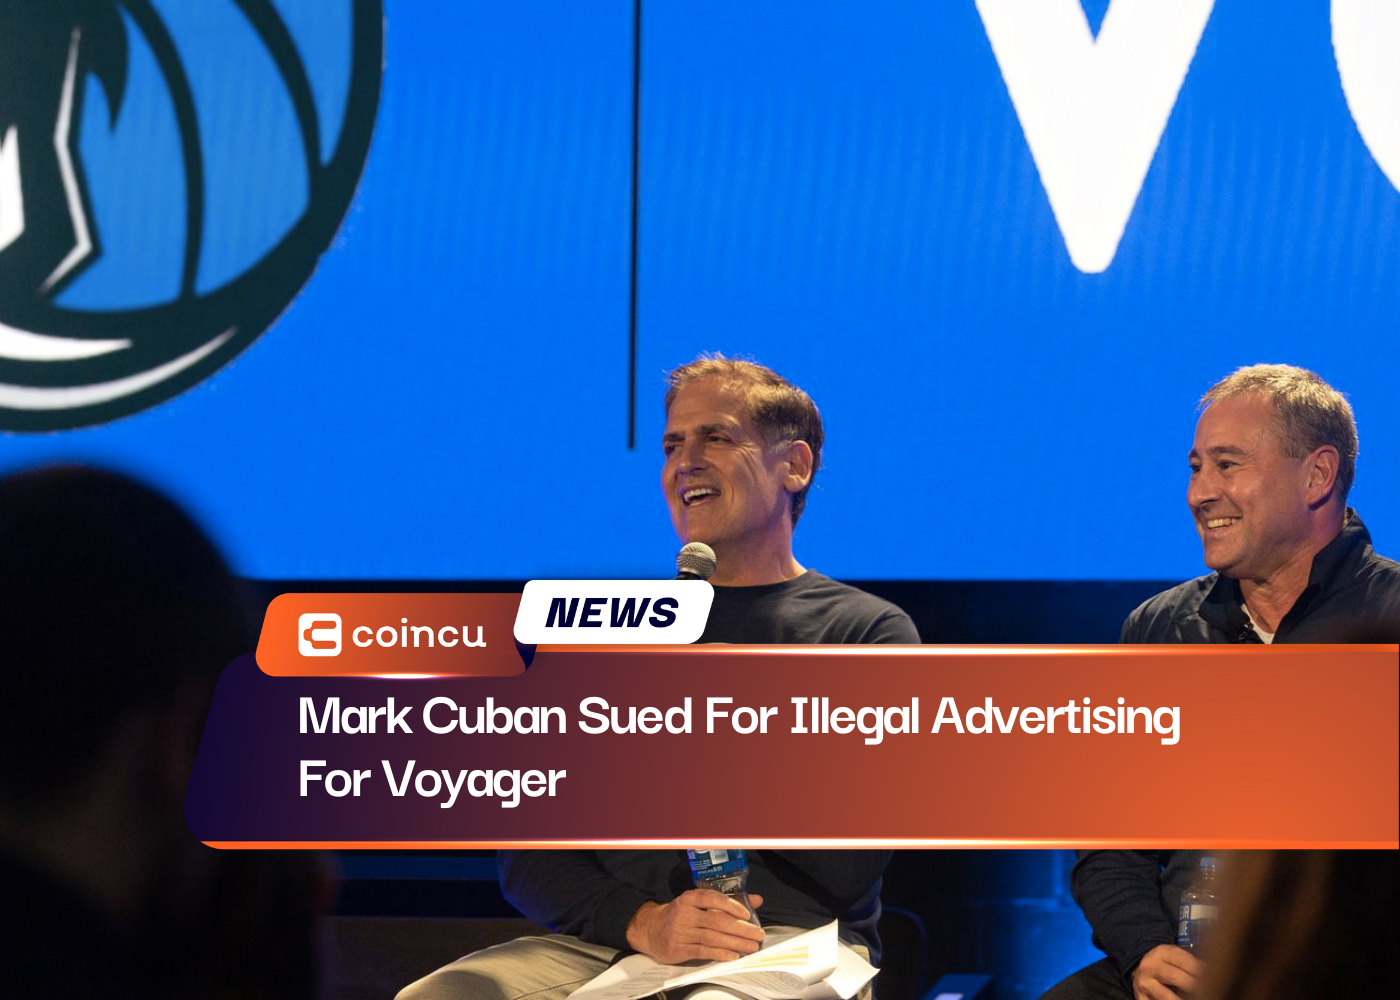 Mark Cuban poursuivi pour publicité illégale pour le Voyager